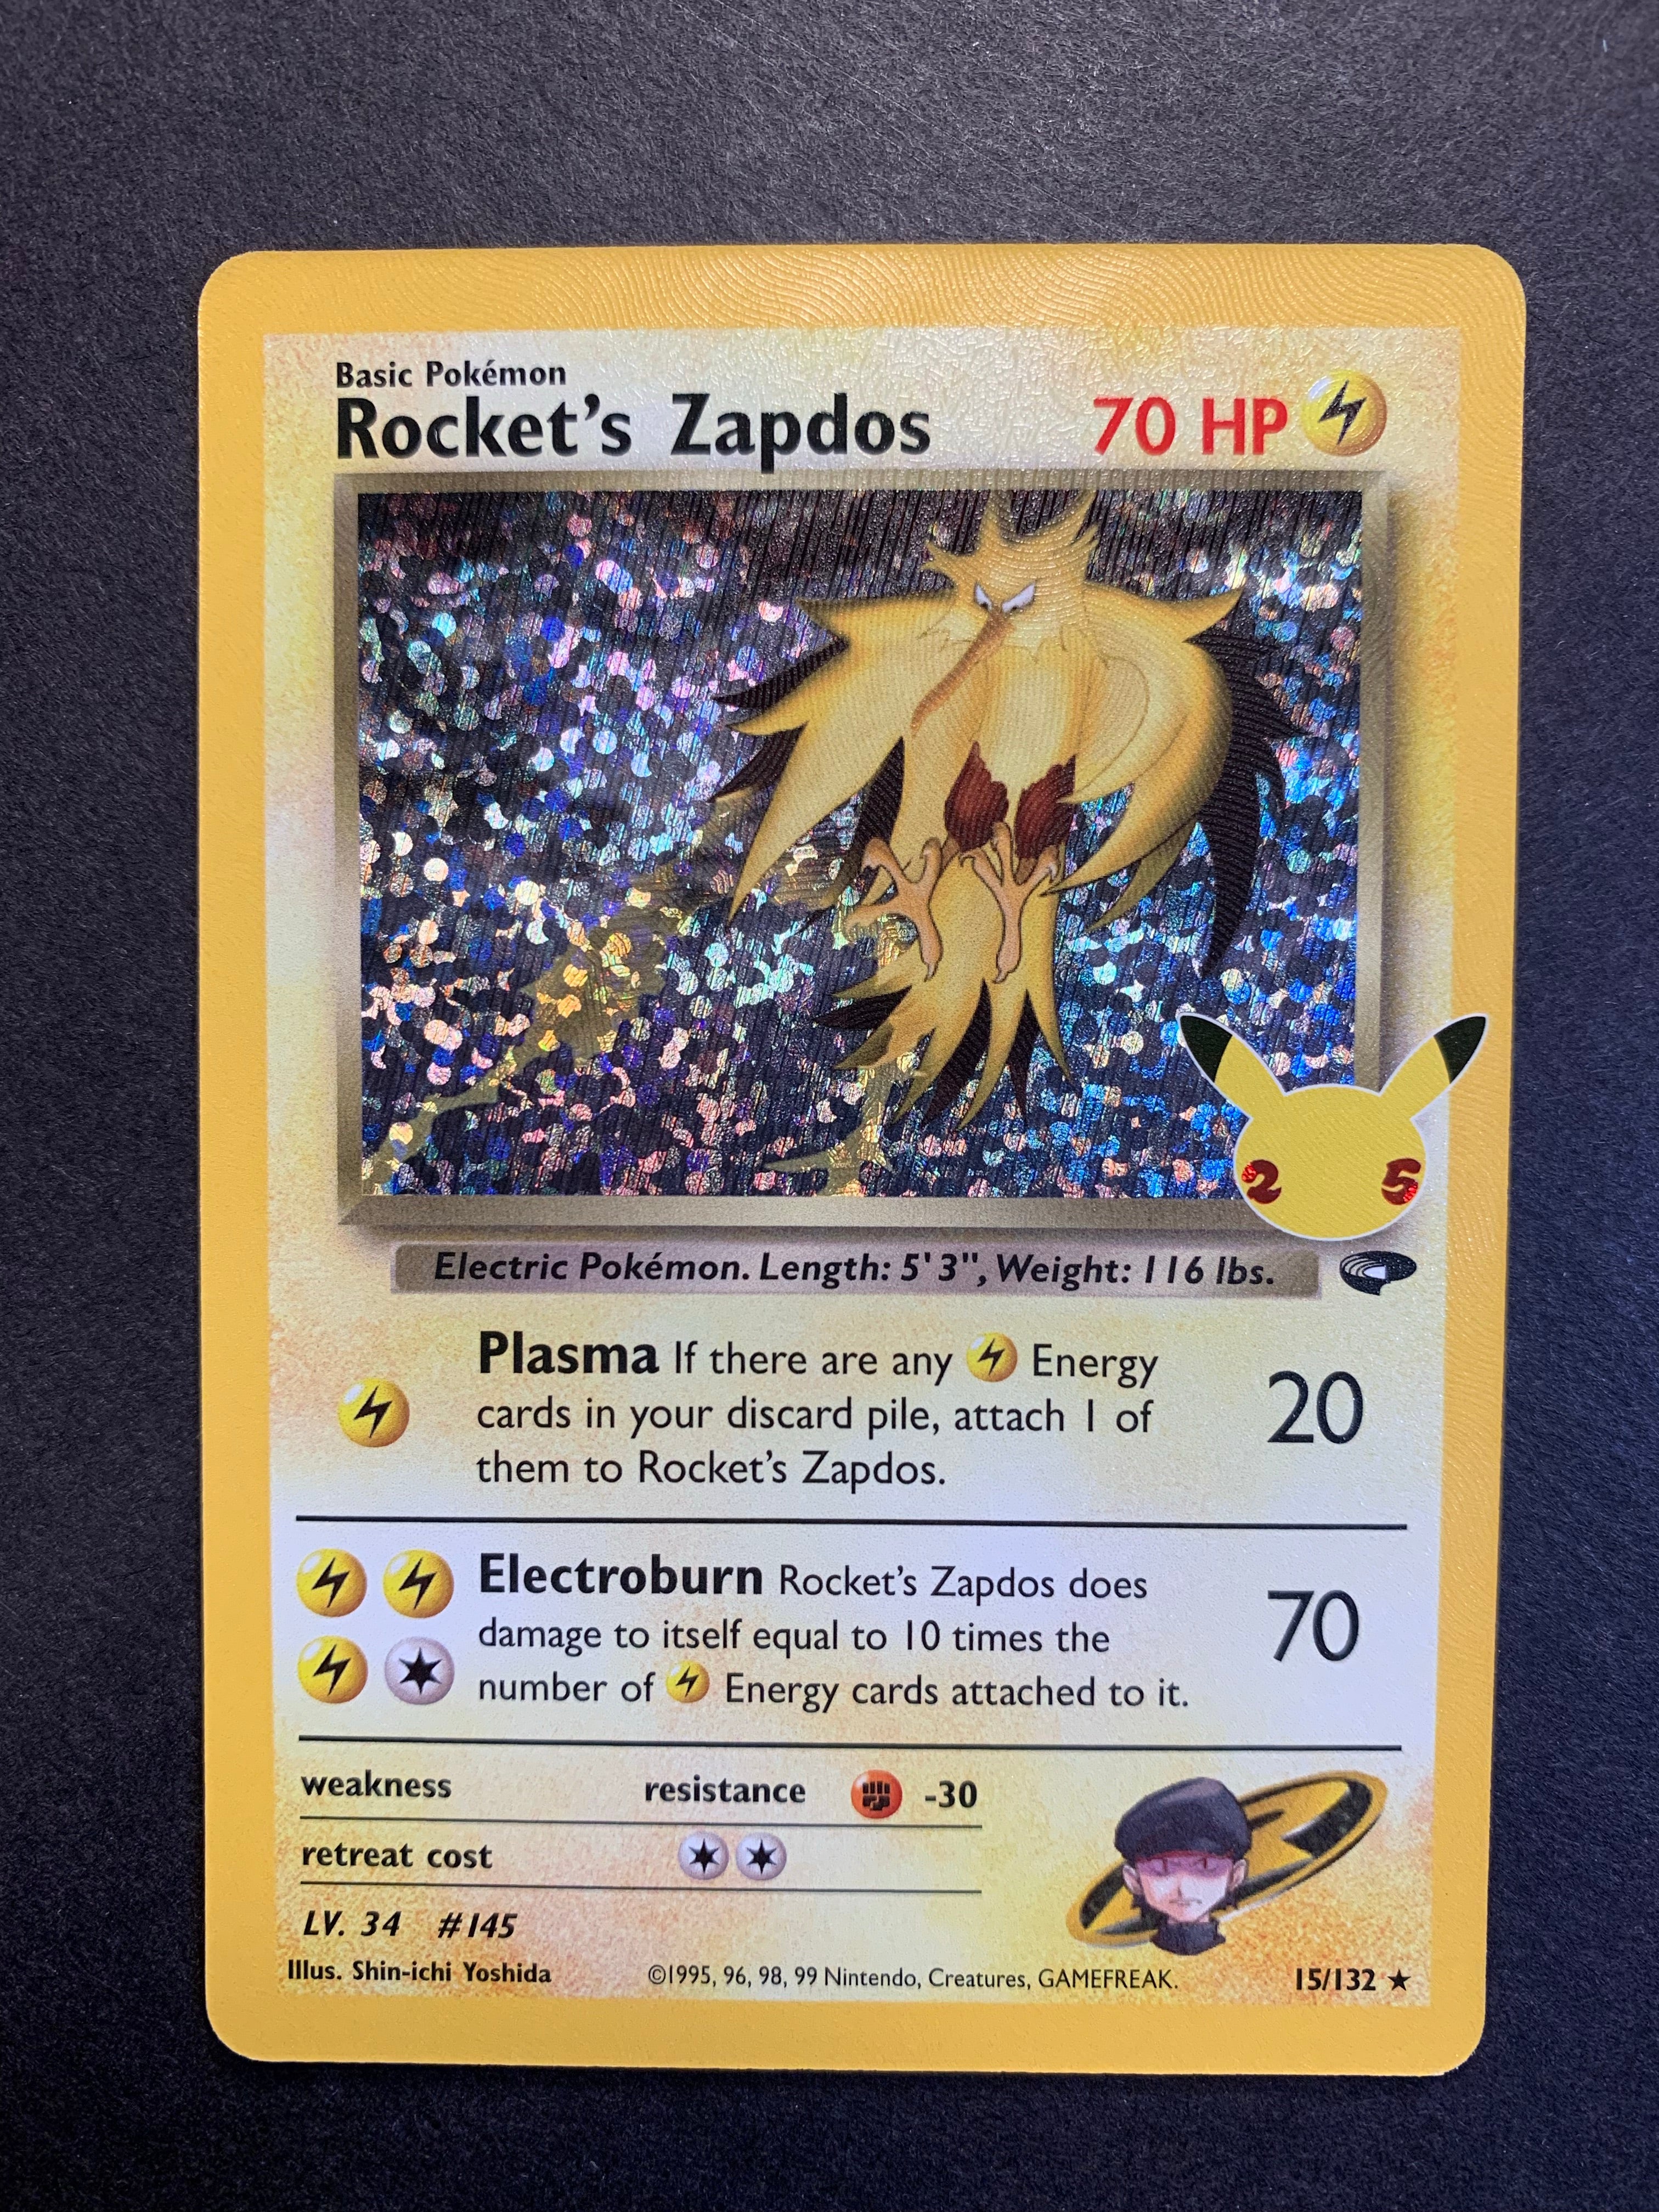 Rocket's Zapdos ex